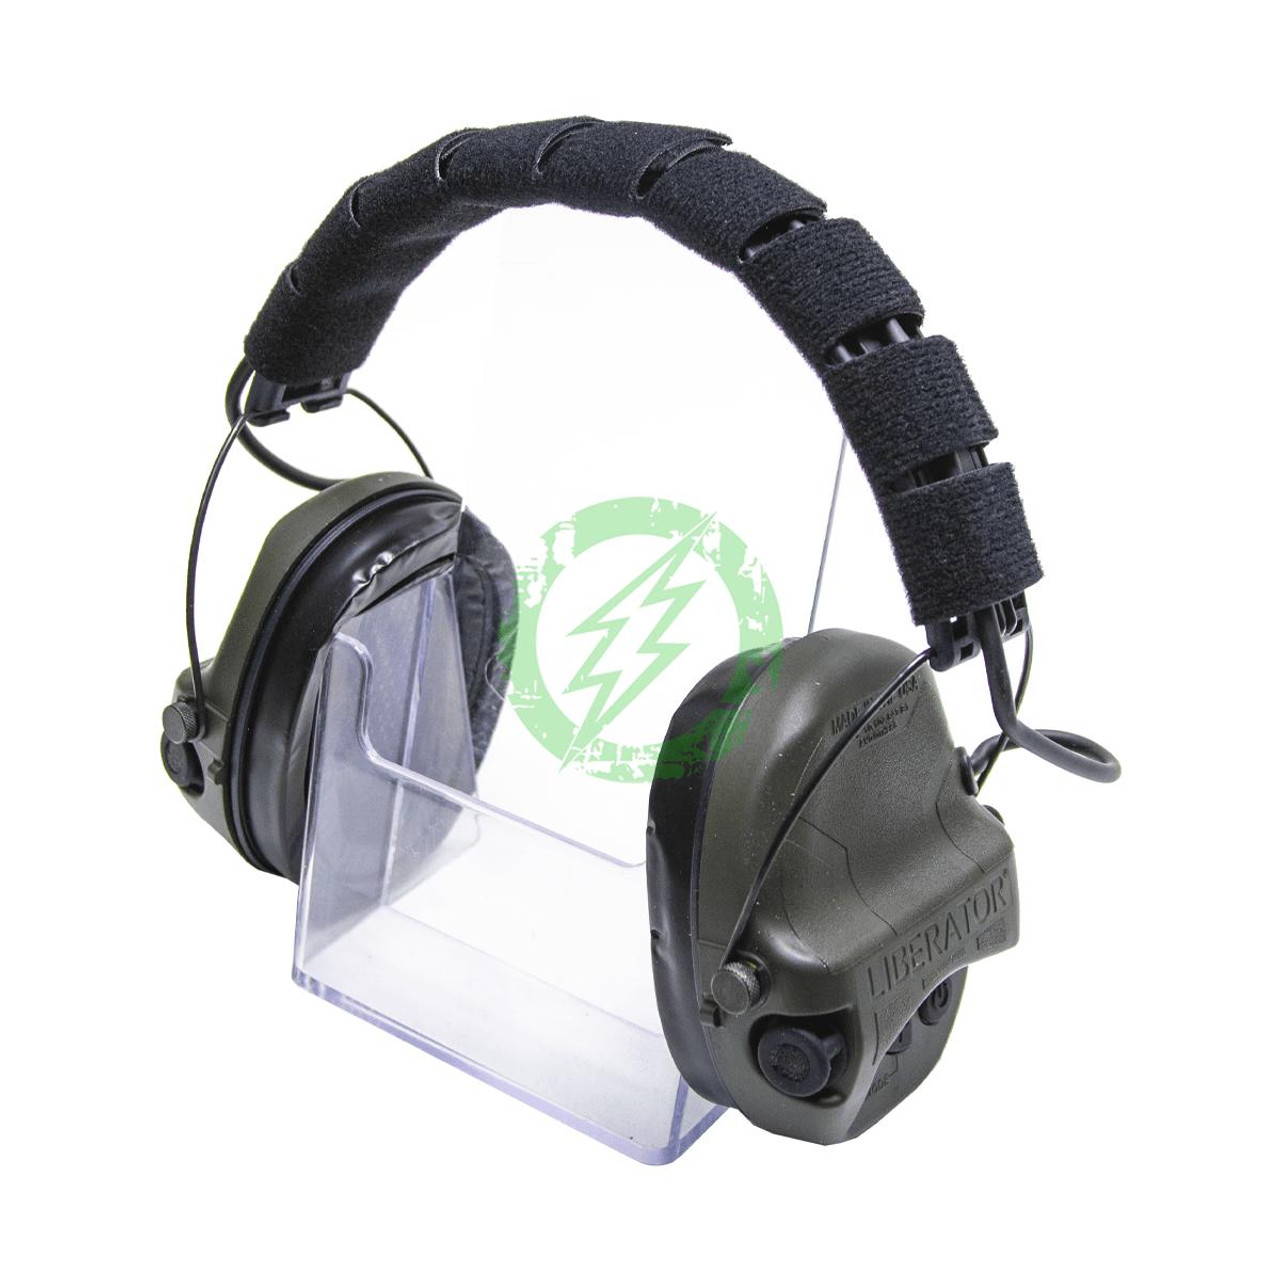  Safariland Liberator HP 2.0 Hearing Protection | Olive Drab 